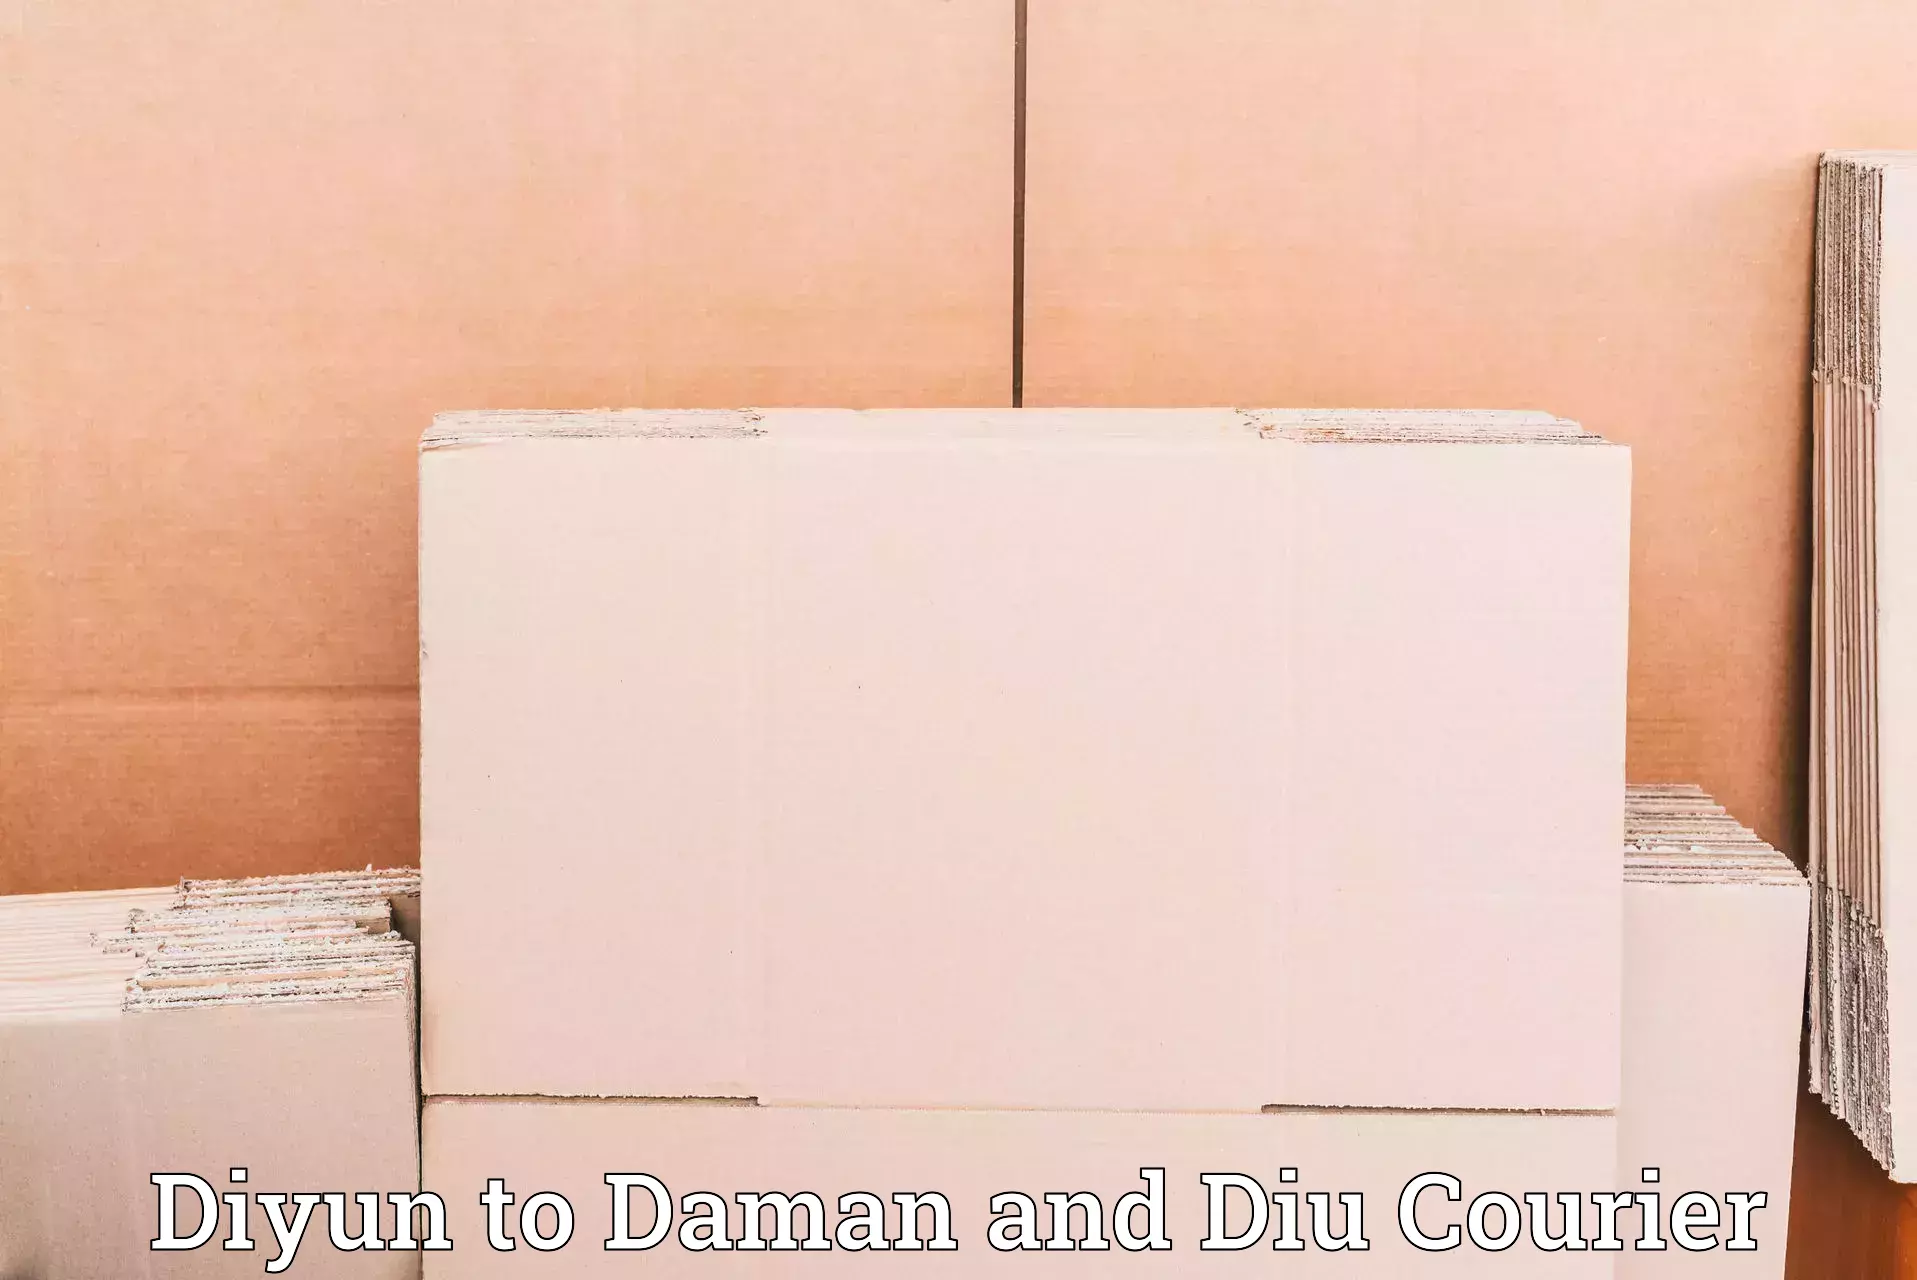 Bulk shipment Diyun to Daman